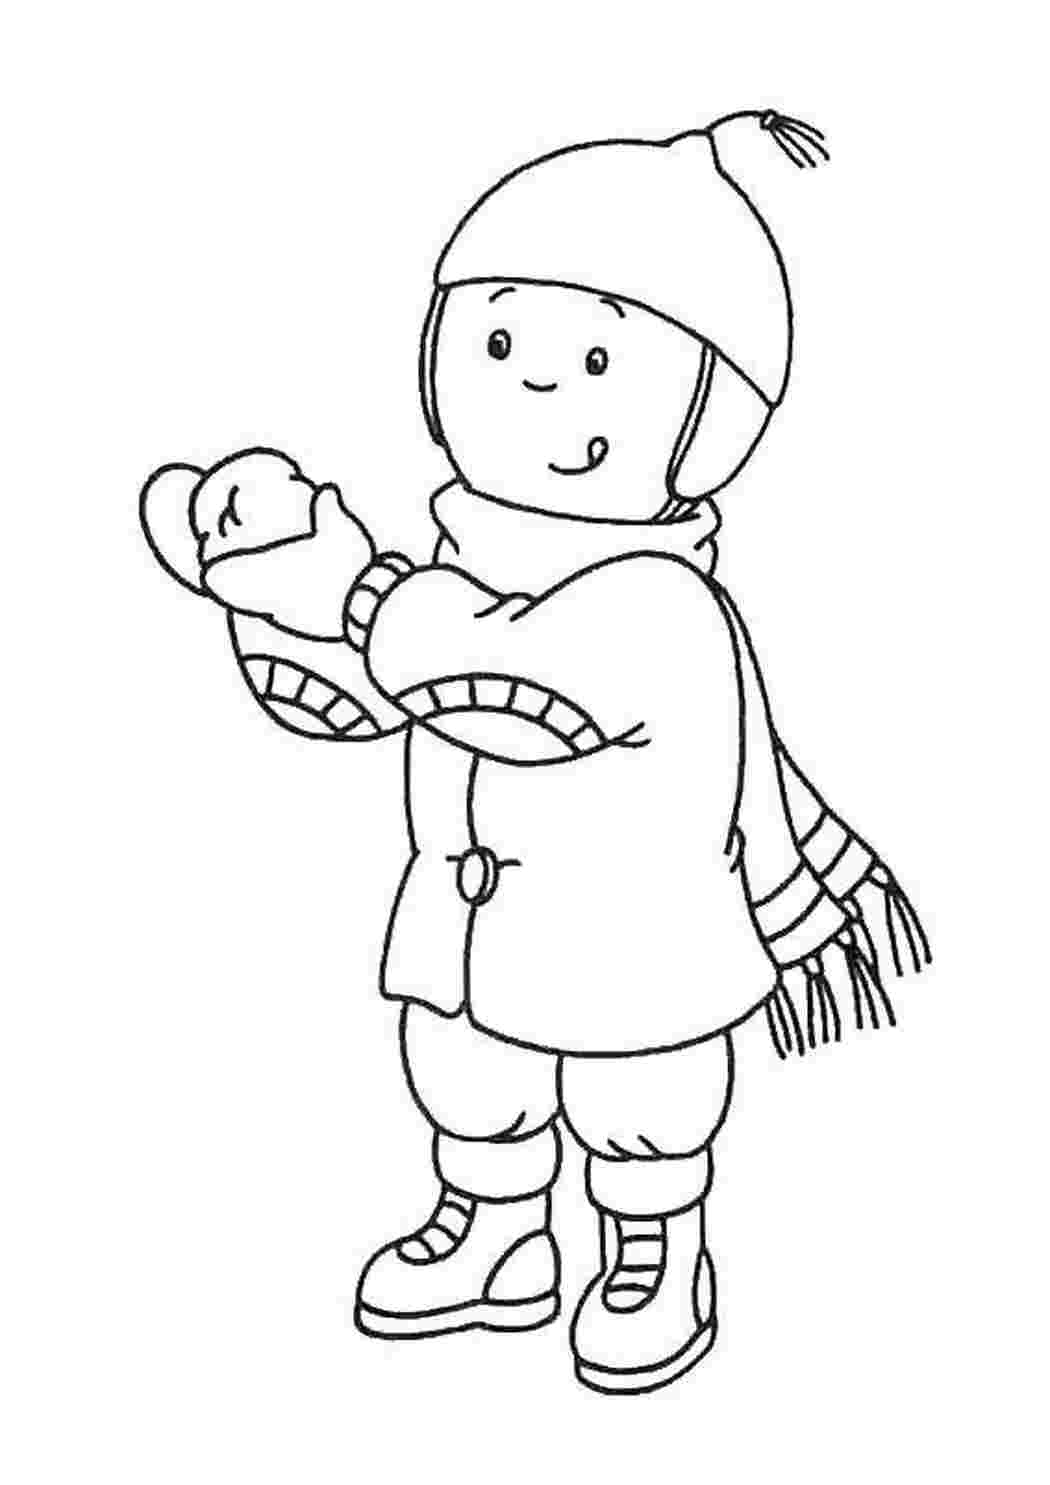 Раскраска мальчик в зимней одежде для детей